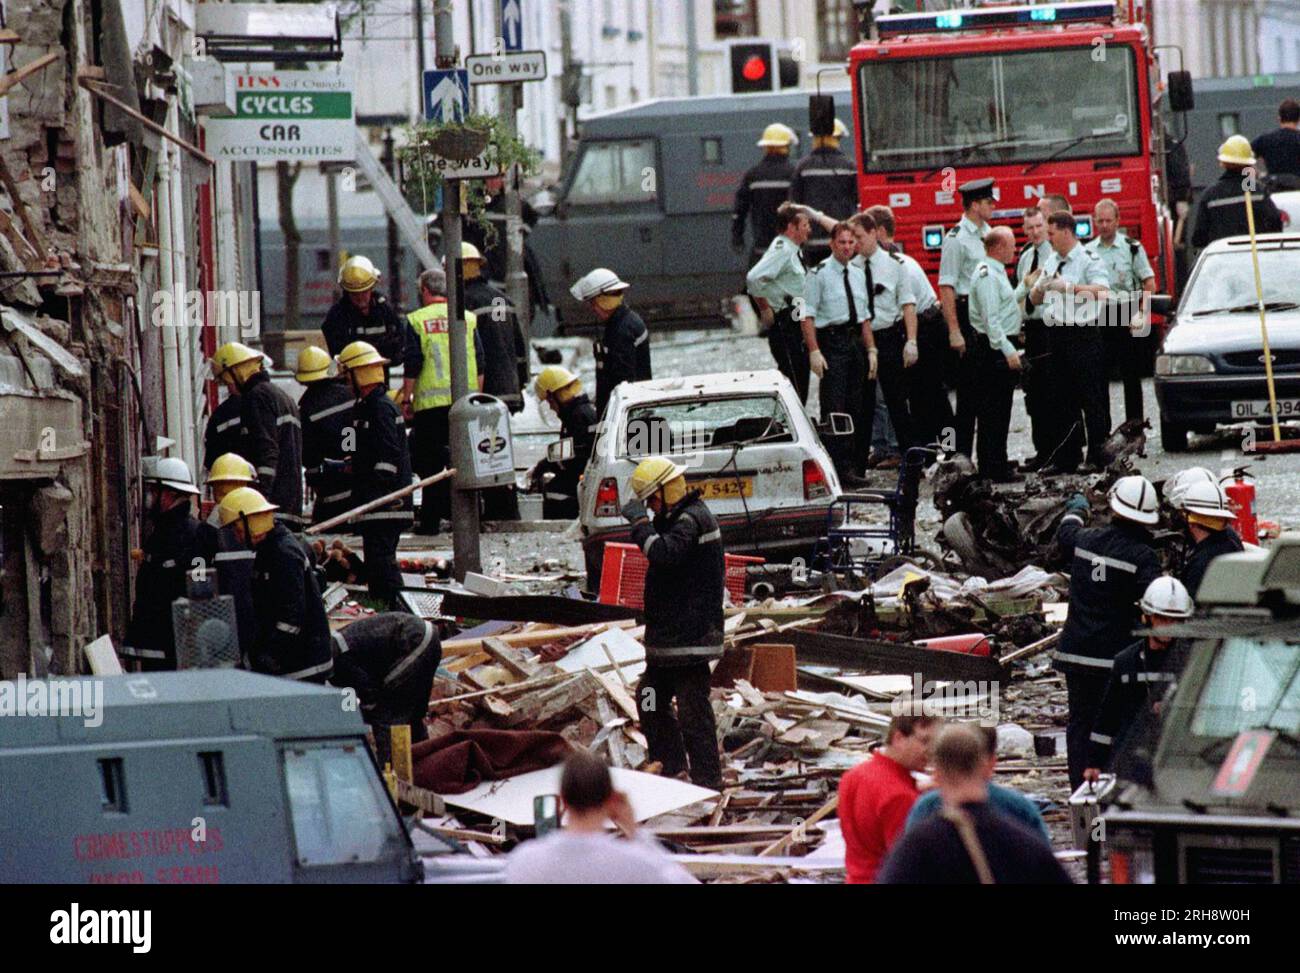 UK USE ONLY file foto datata 15/08/1998 di agenti di polizia e vigili del fuoco che ispezionano i danni causati da un'esplosione di bombe a Market Street, Omagh. Dobbiamo trarre insegnamento dalla devastazione provocata dal bombardamento di Omagh 25 anni fa, ha affermato il Segretario dell'Irlanda del Nord Chris Heaton-Harris. L'onorevole Heaton-Harris ha affermato che il governo continua ad avere la più profonda solidarietà per tutti coloro che sono stati colpiti dall'atrocità, la peggiore perdita di vite umane in un singolo incidente nel travagliato passato dell'Irlanda del Nord. Le famiglie di alcuni di coloro che sono rimasti in lutto nell'incidente dovrebbero riunirsi nel sito più tardi a Los Angeles Foto Stock